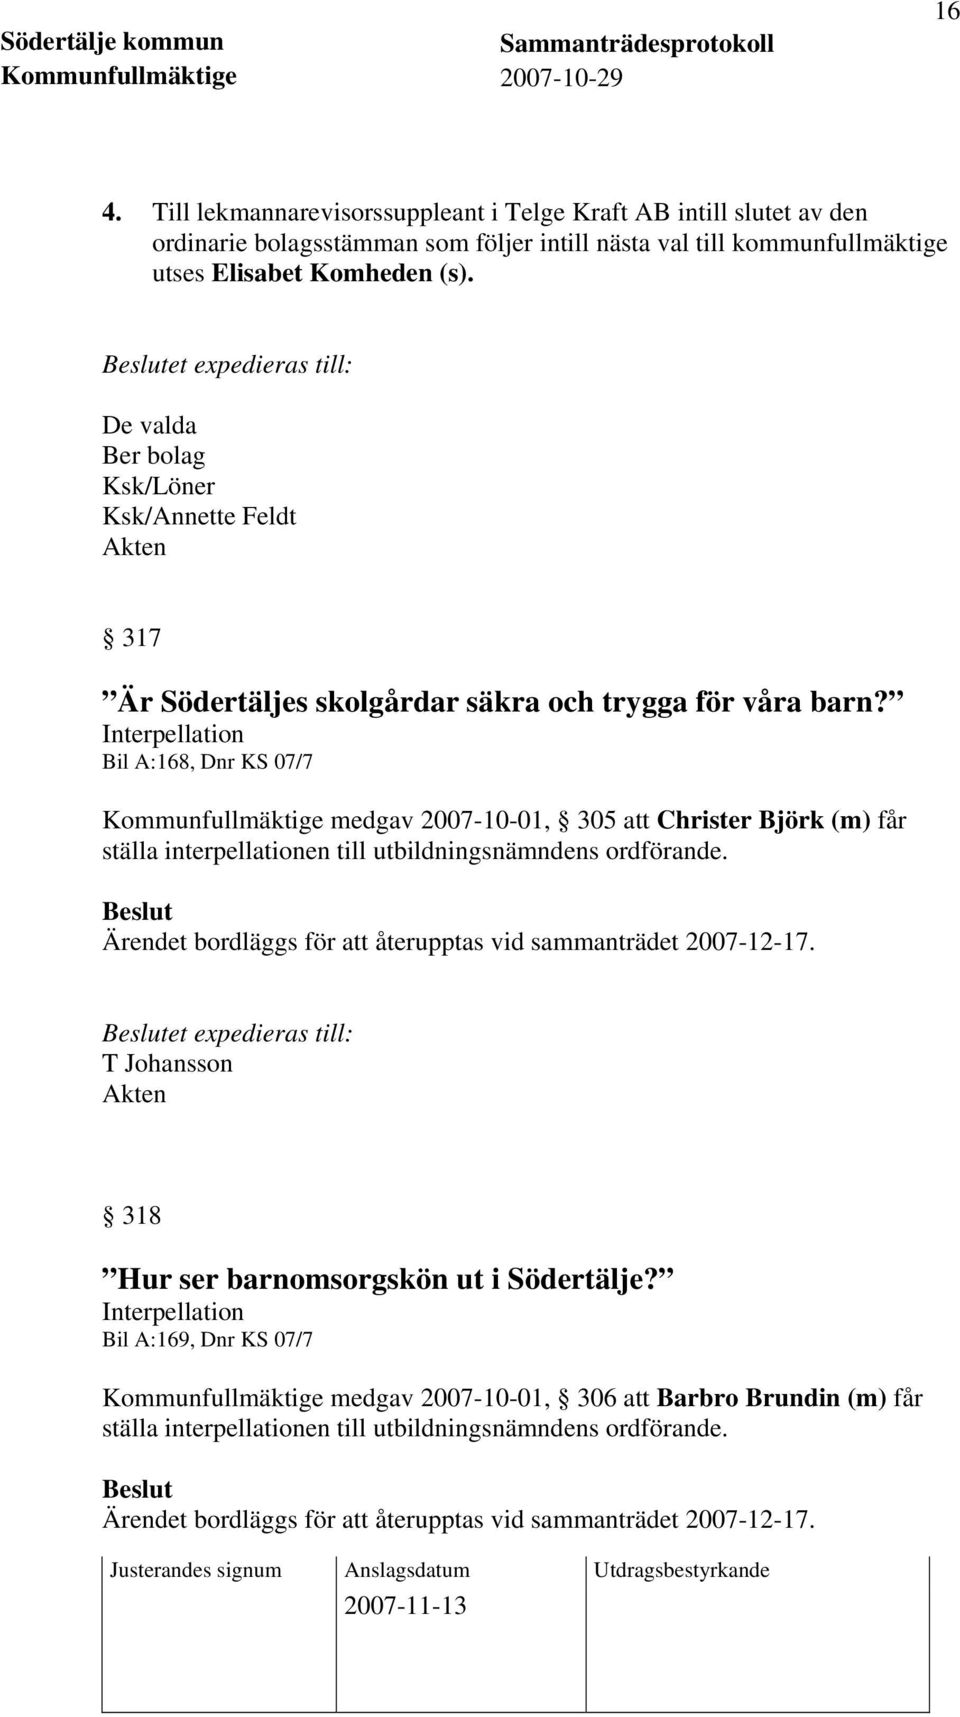 Interpellation Bil A:168, Dnr KS 07/7 Kommunfullmäktige medgav 2007-10-01, 305 att Christer Björk (m) får ställa interpellationen till utbildningsnämndens ordförande.